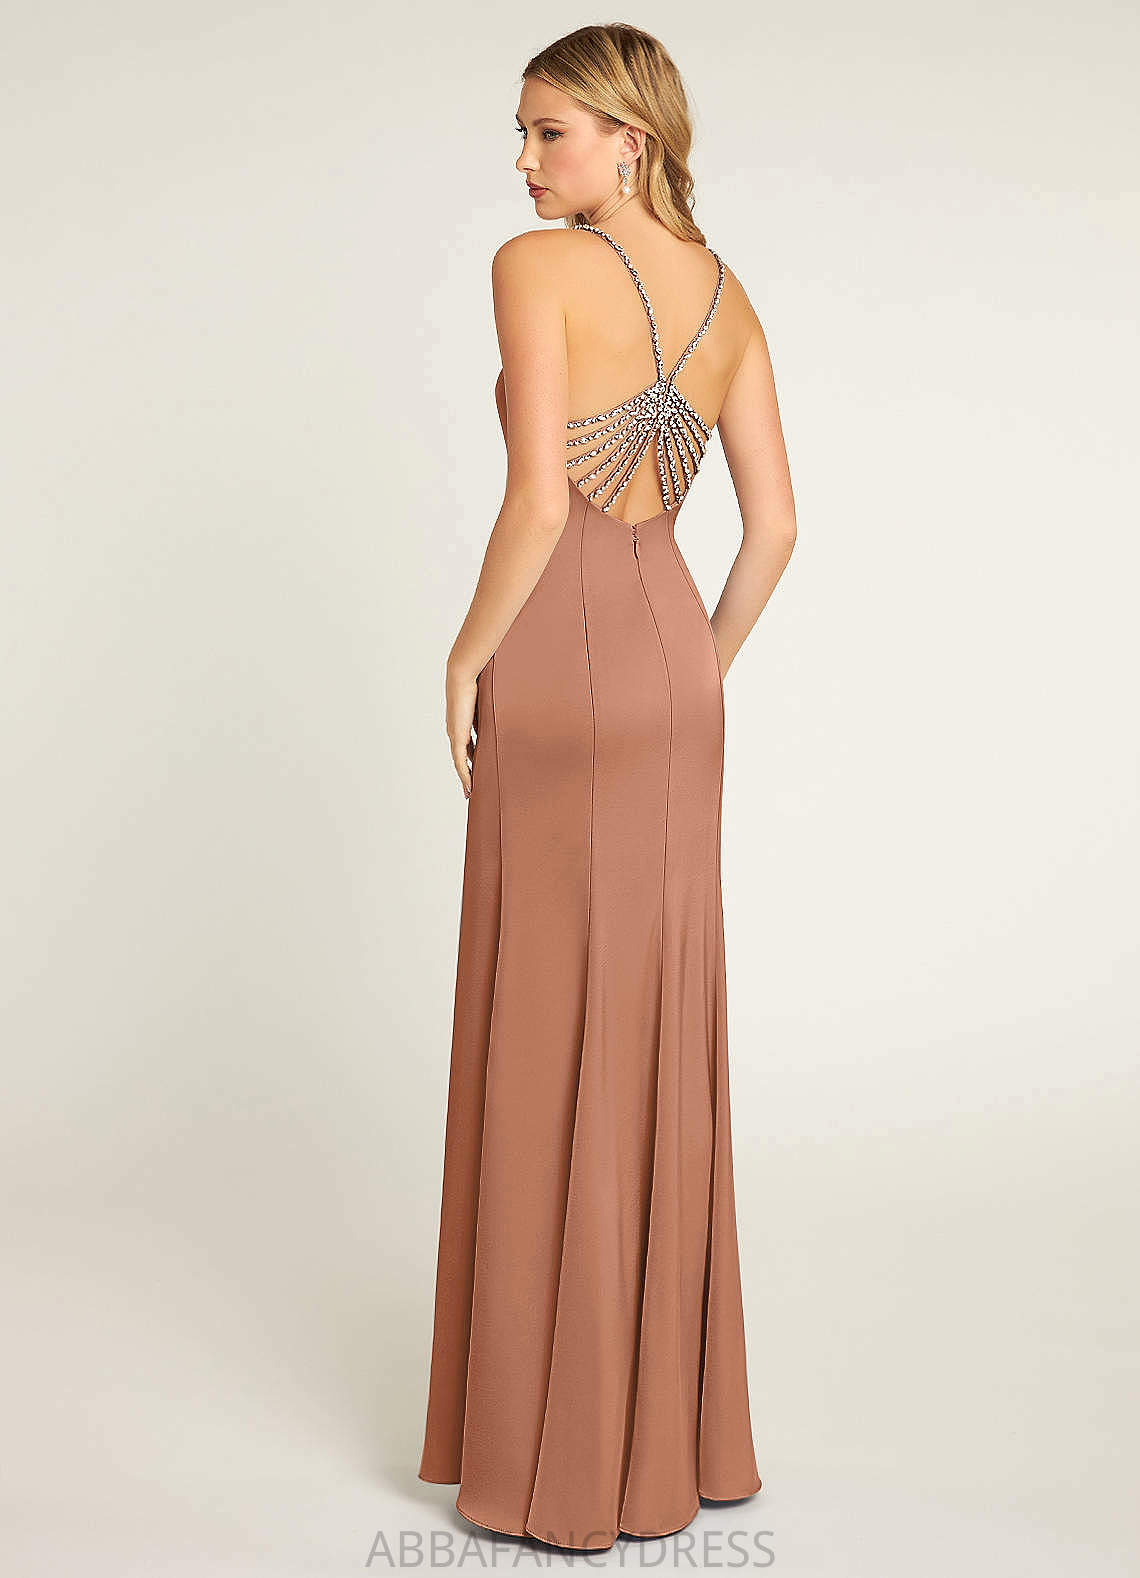 Elyse Trumpet/Mermaid Sleeveless Floor Length Spaghetti Staps Natural Waist Bridesmaid Dresses